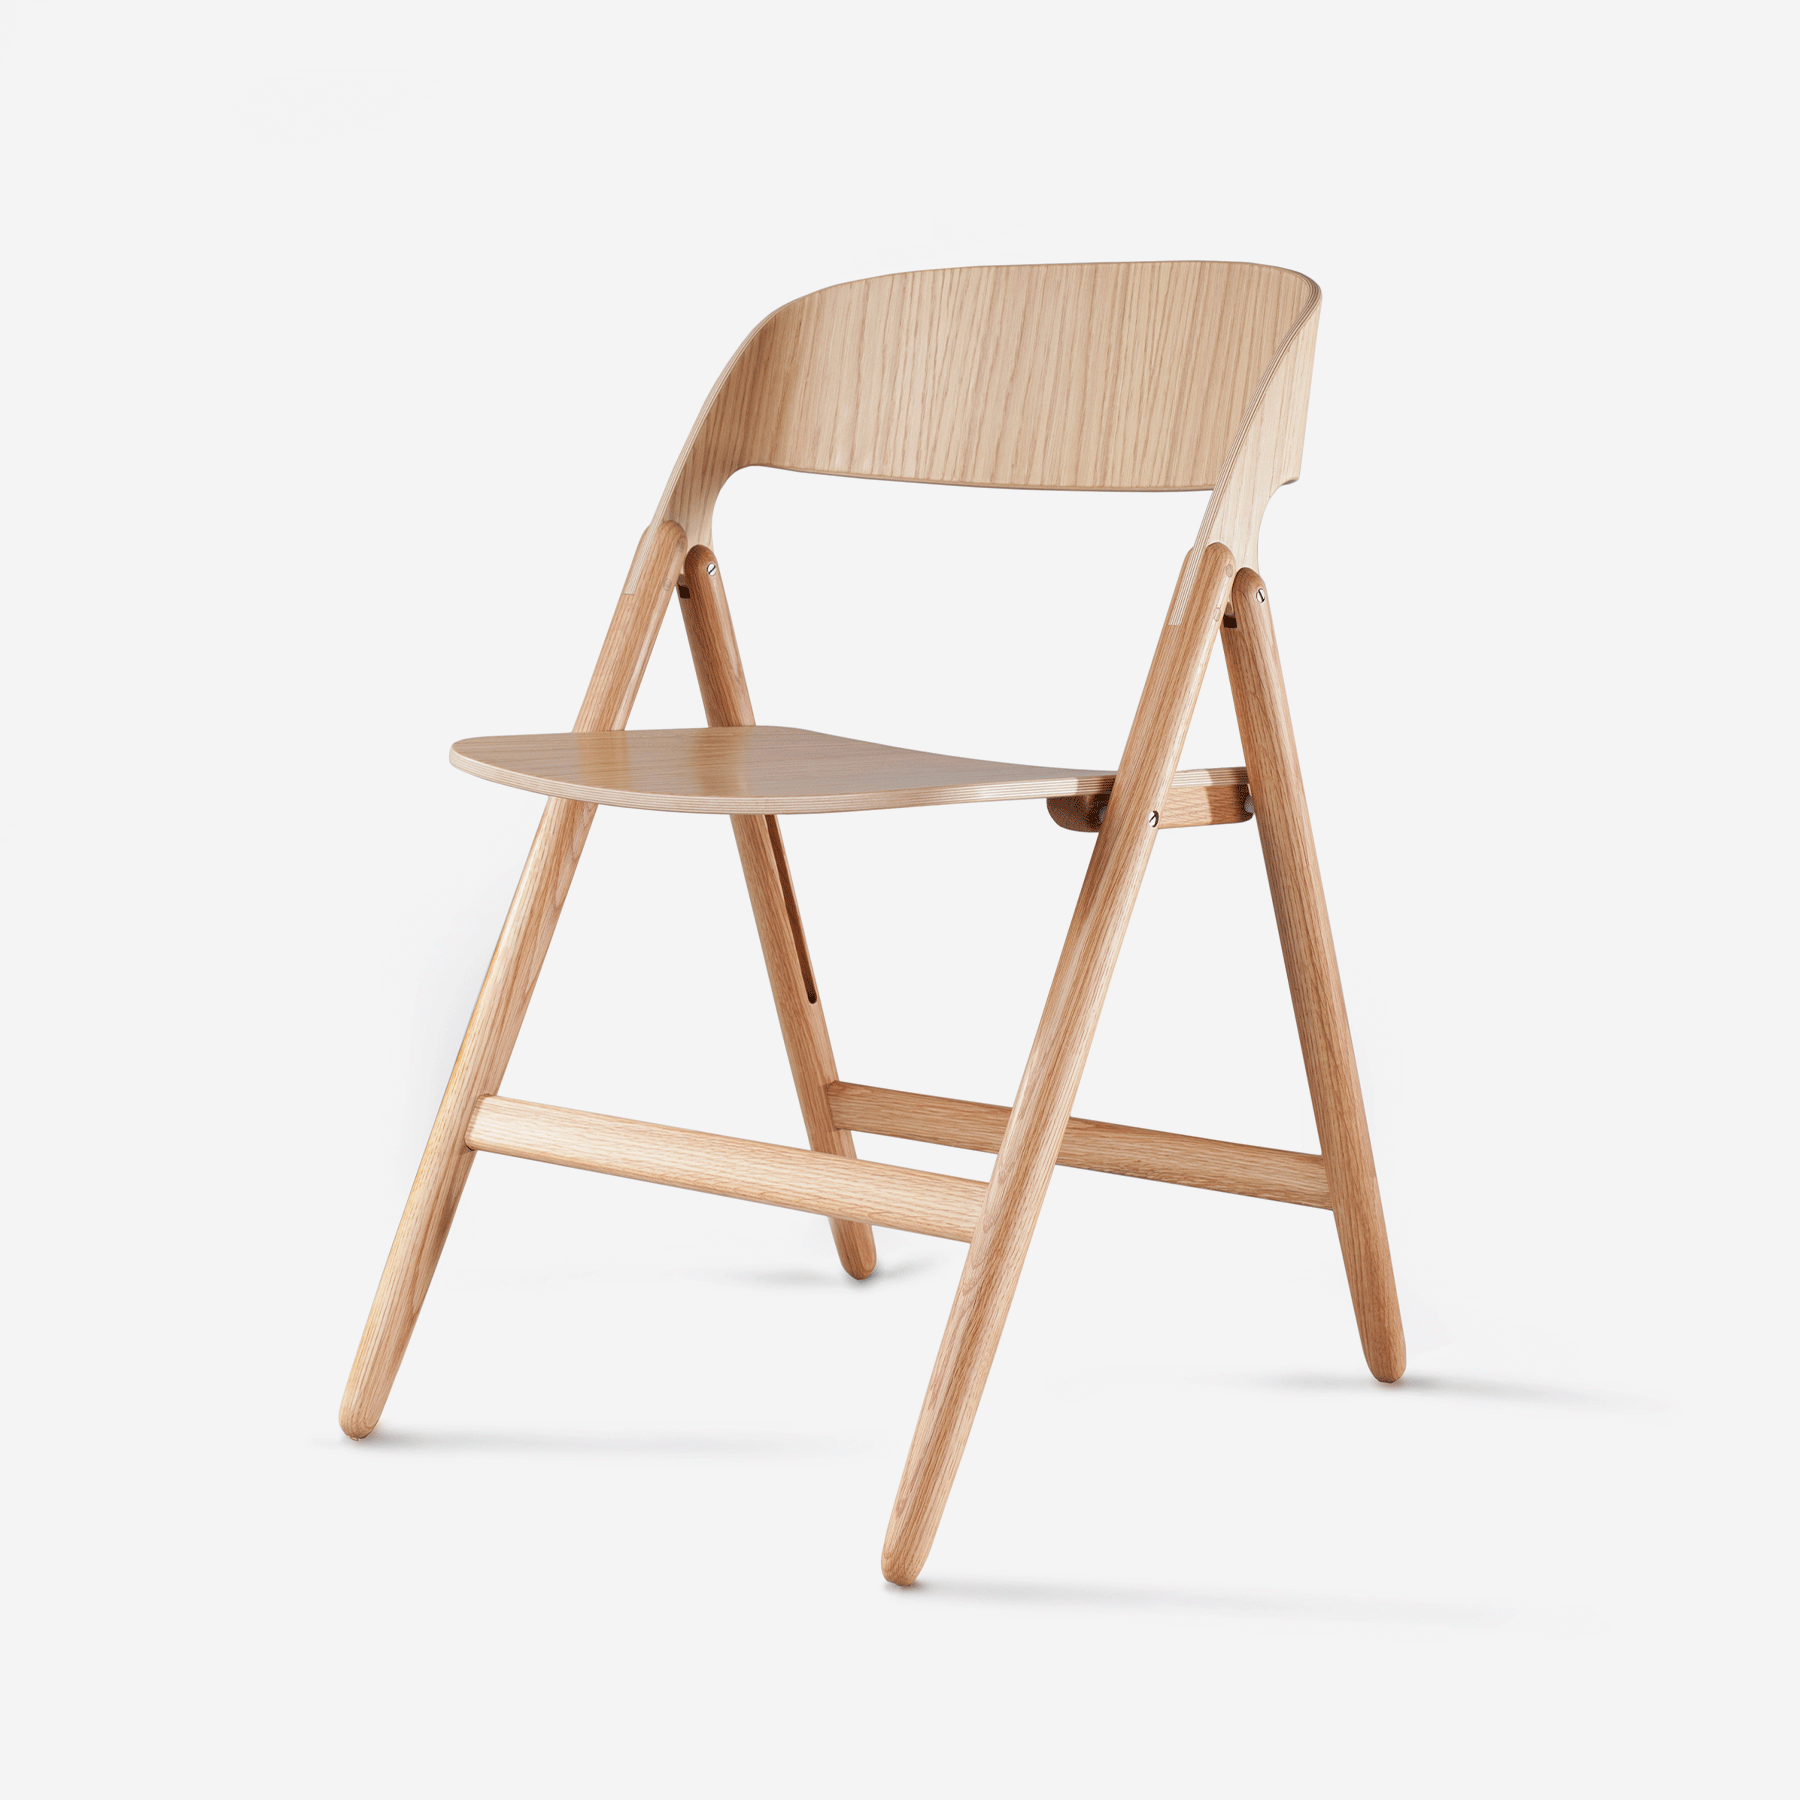 Narin Folding Chair, Oak